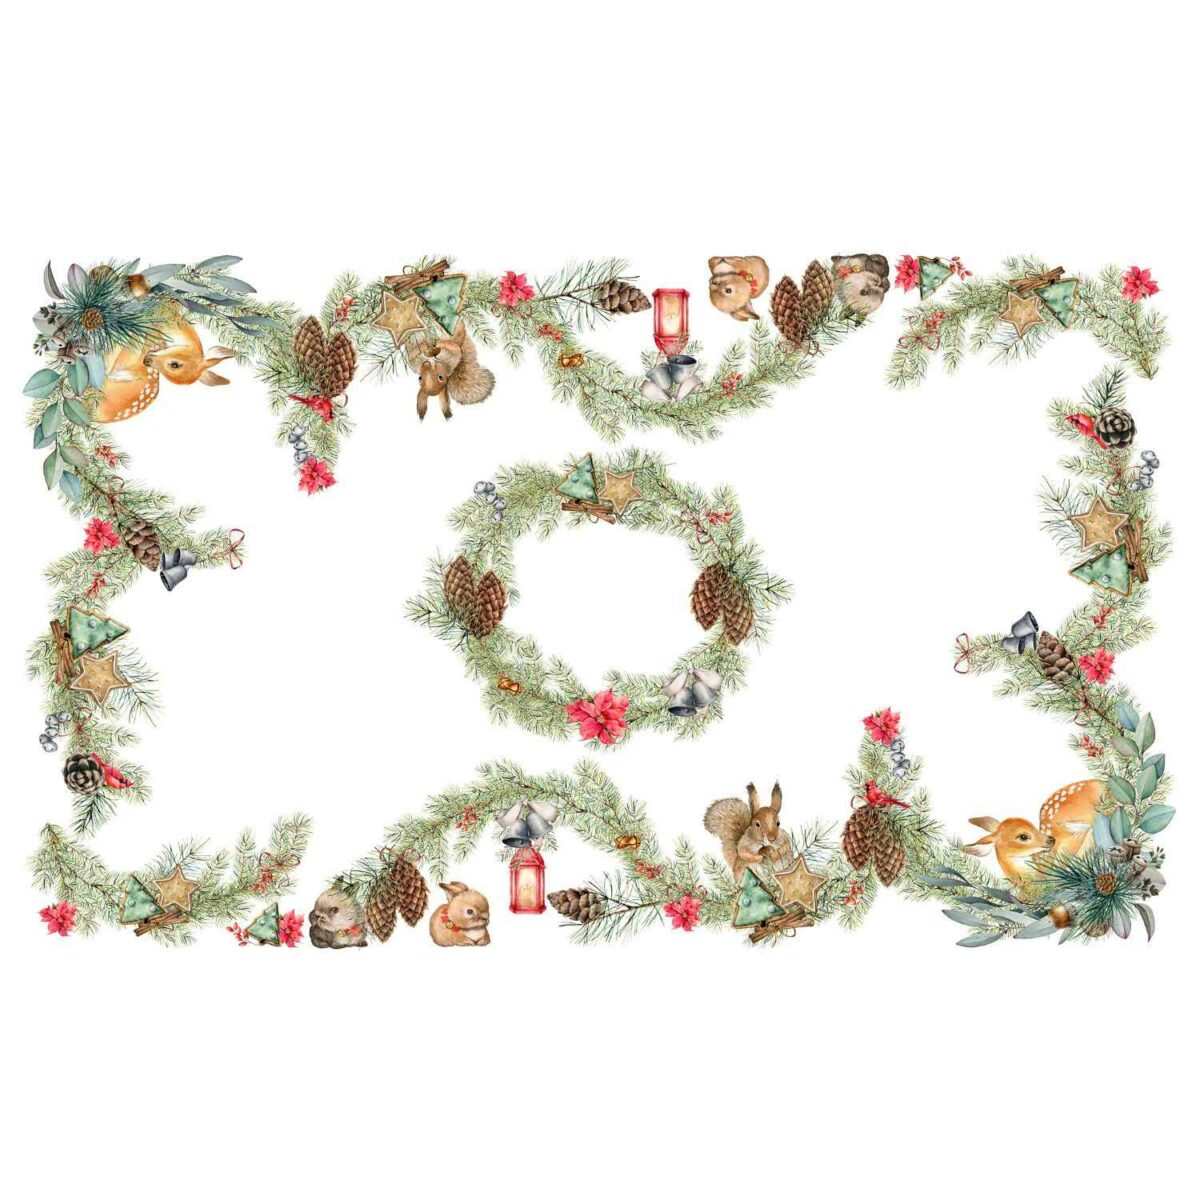 tavaglia-stampa-digitale-forest-alta-definizione-ghirlande-pigne-cerbiatti-scoiattoli-coniglietti-invernale-autunnale-natalizia-cotone-disegno